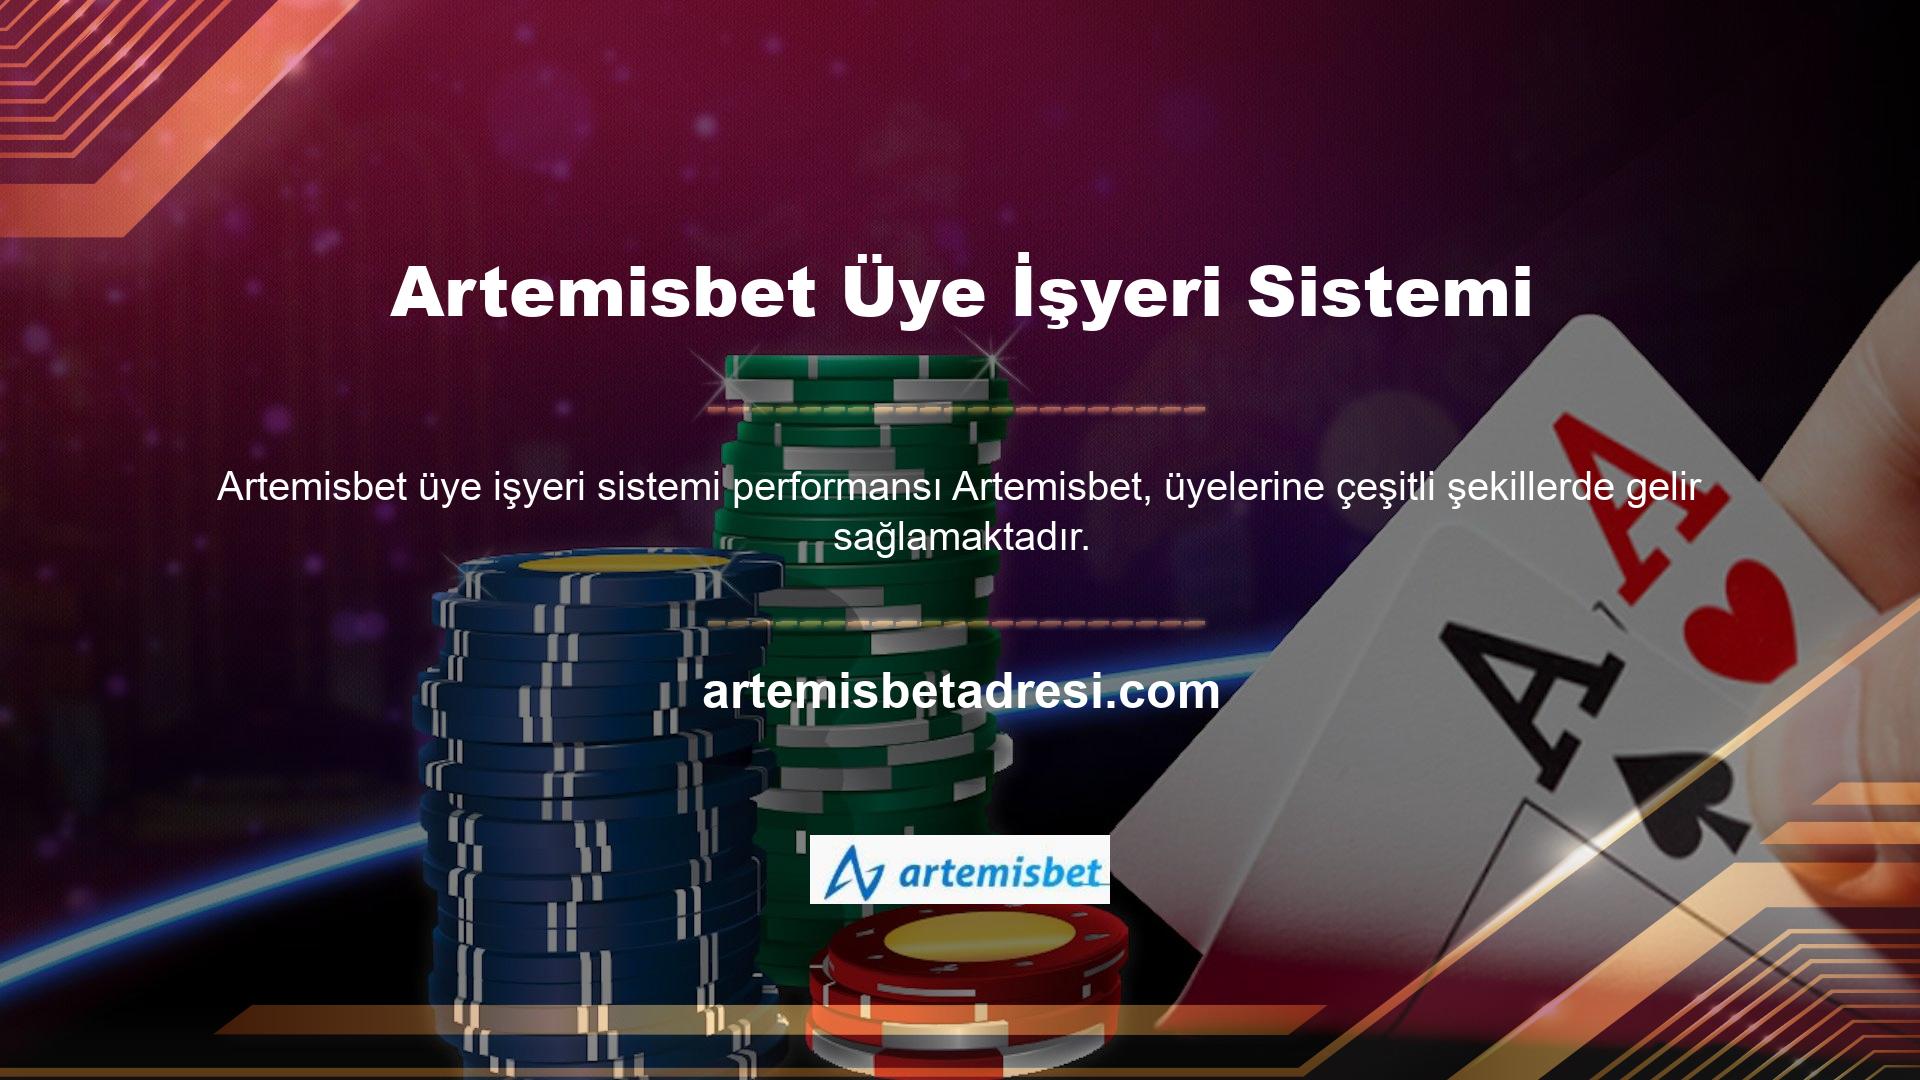 Ayrıca şirket, üyelerine özel bir reklam bütçesi ayırmak yerine reklam vermeleri konusunda Artemisbet üye işyeri sistemi teşvik etmektedir